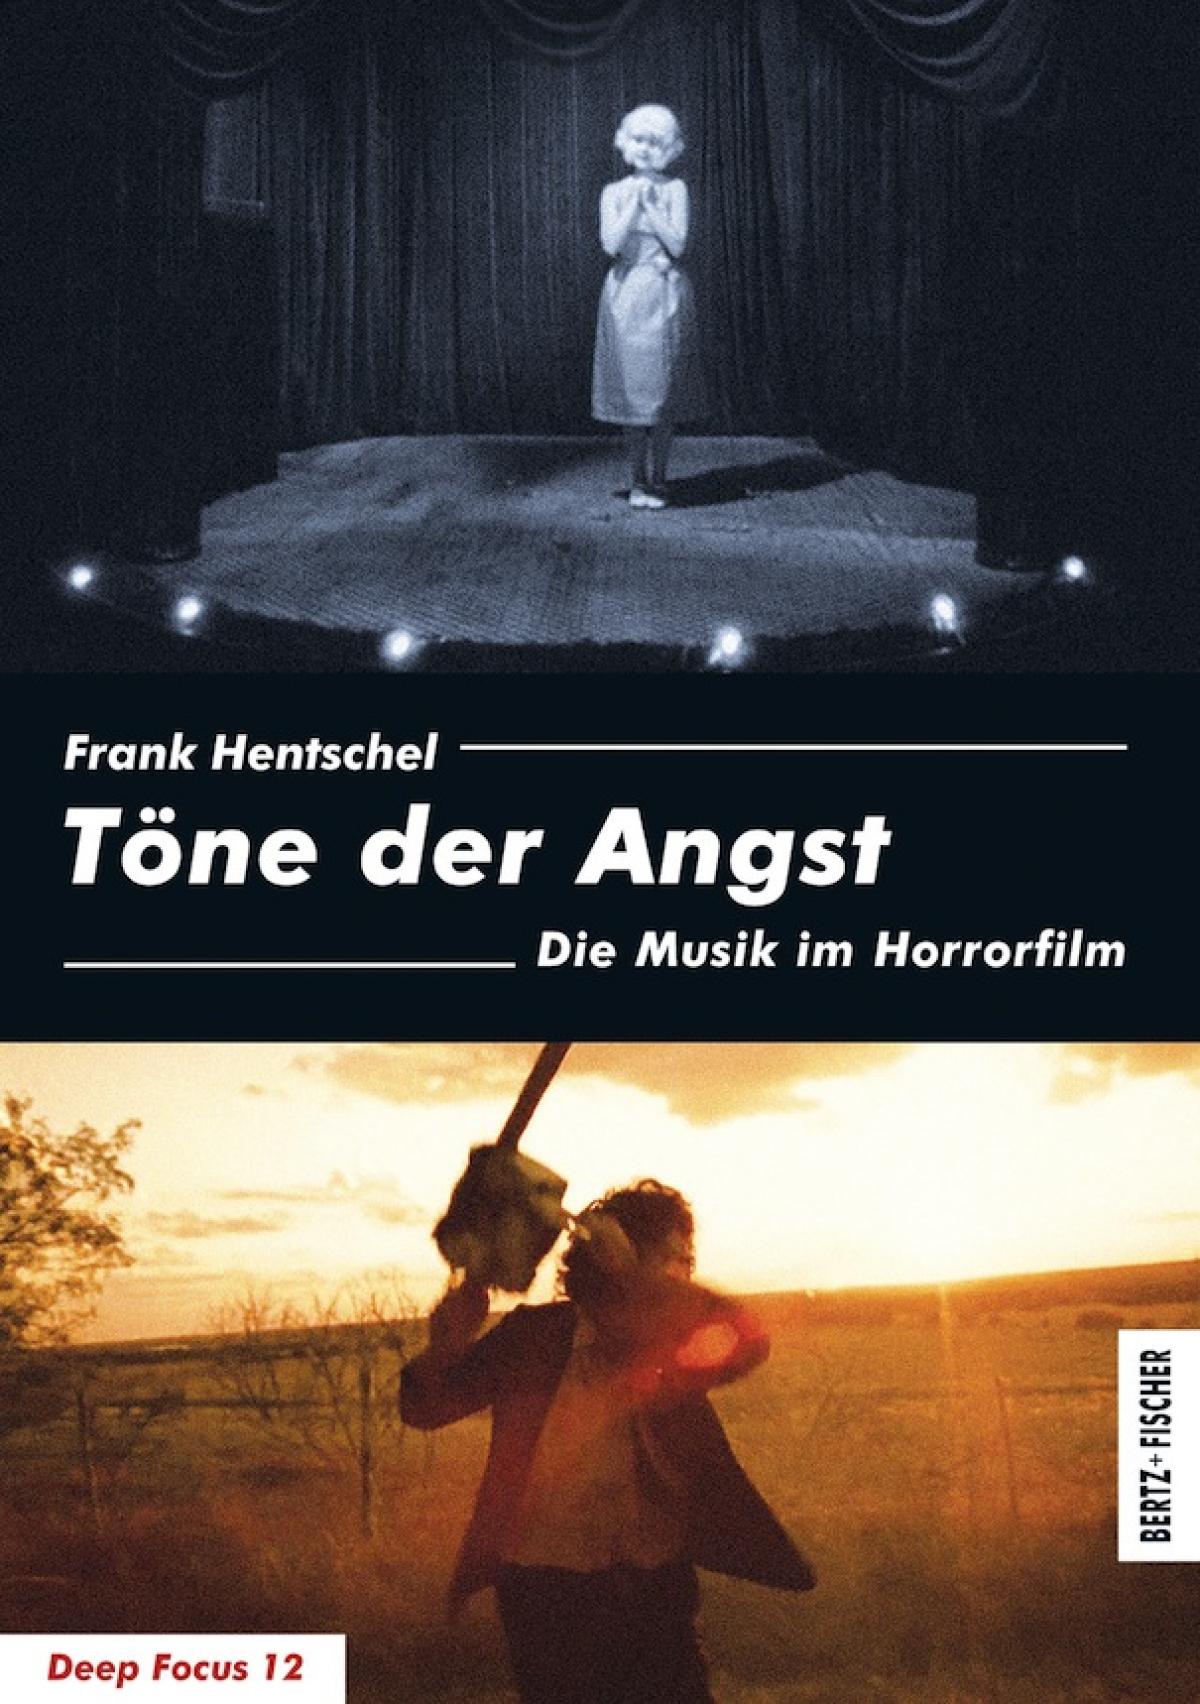 Frank Hentschel: «Töne der Angst. Die Musik im Horrorfilm», Bertz + Fischer 2011.